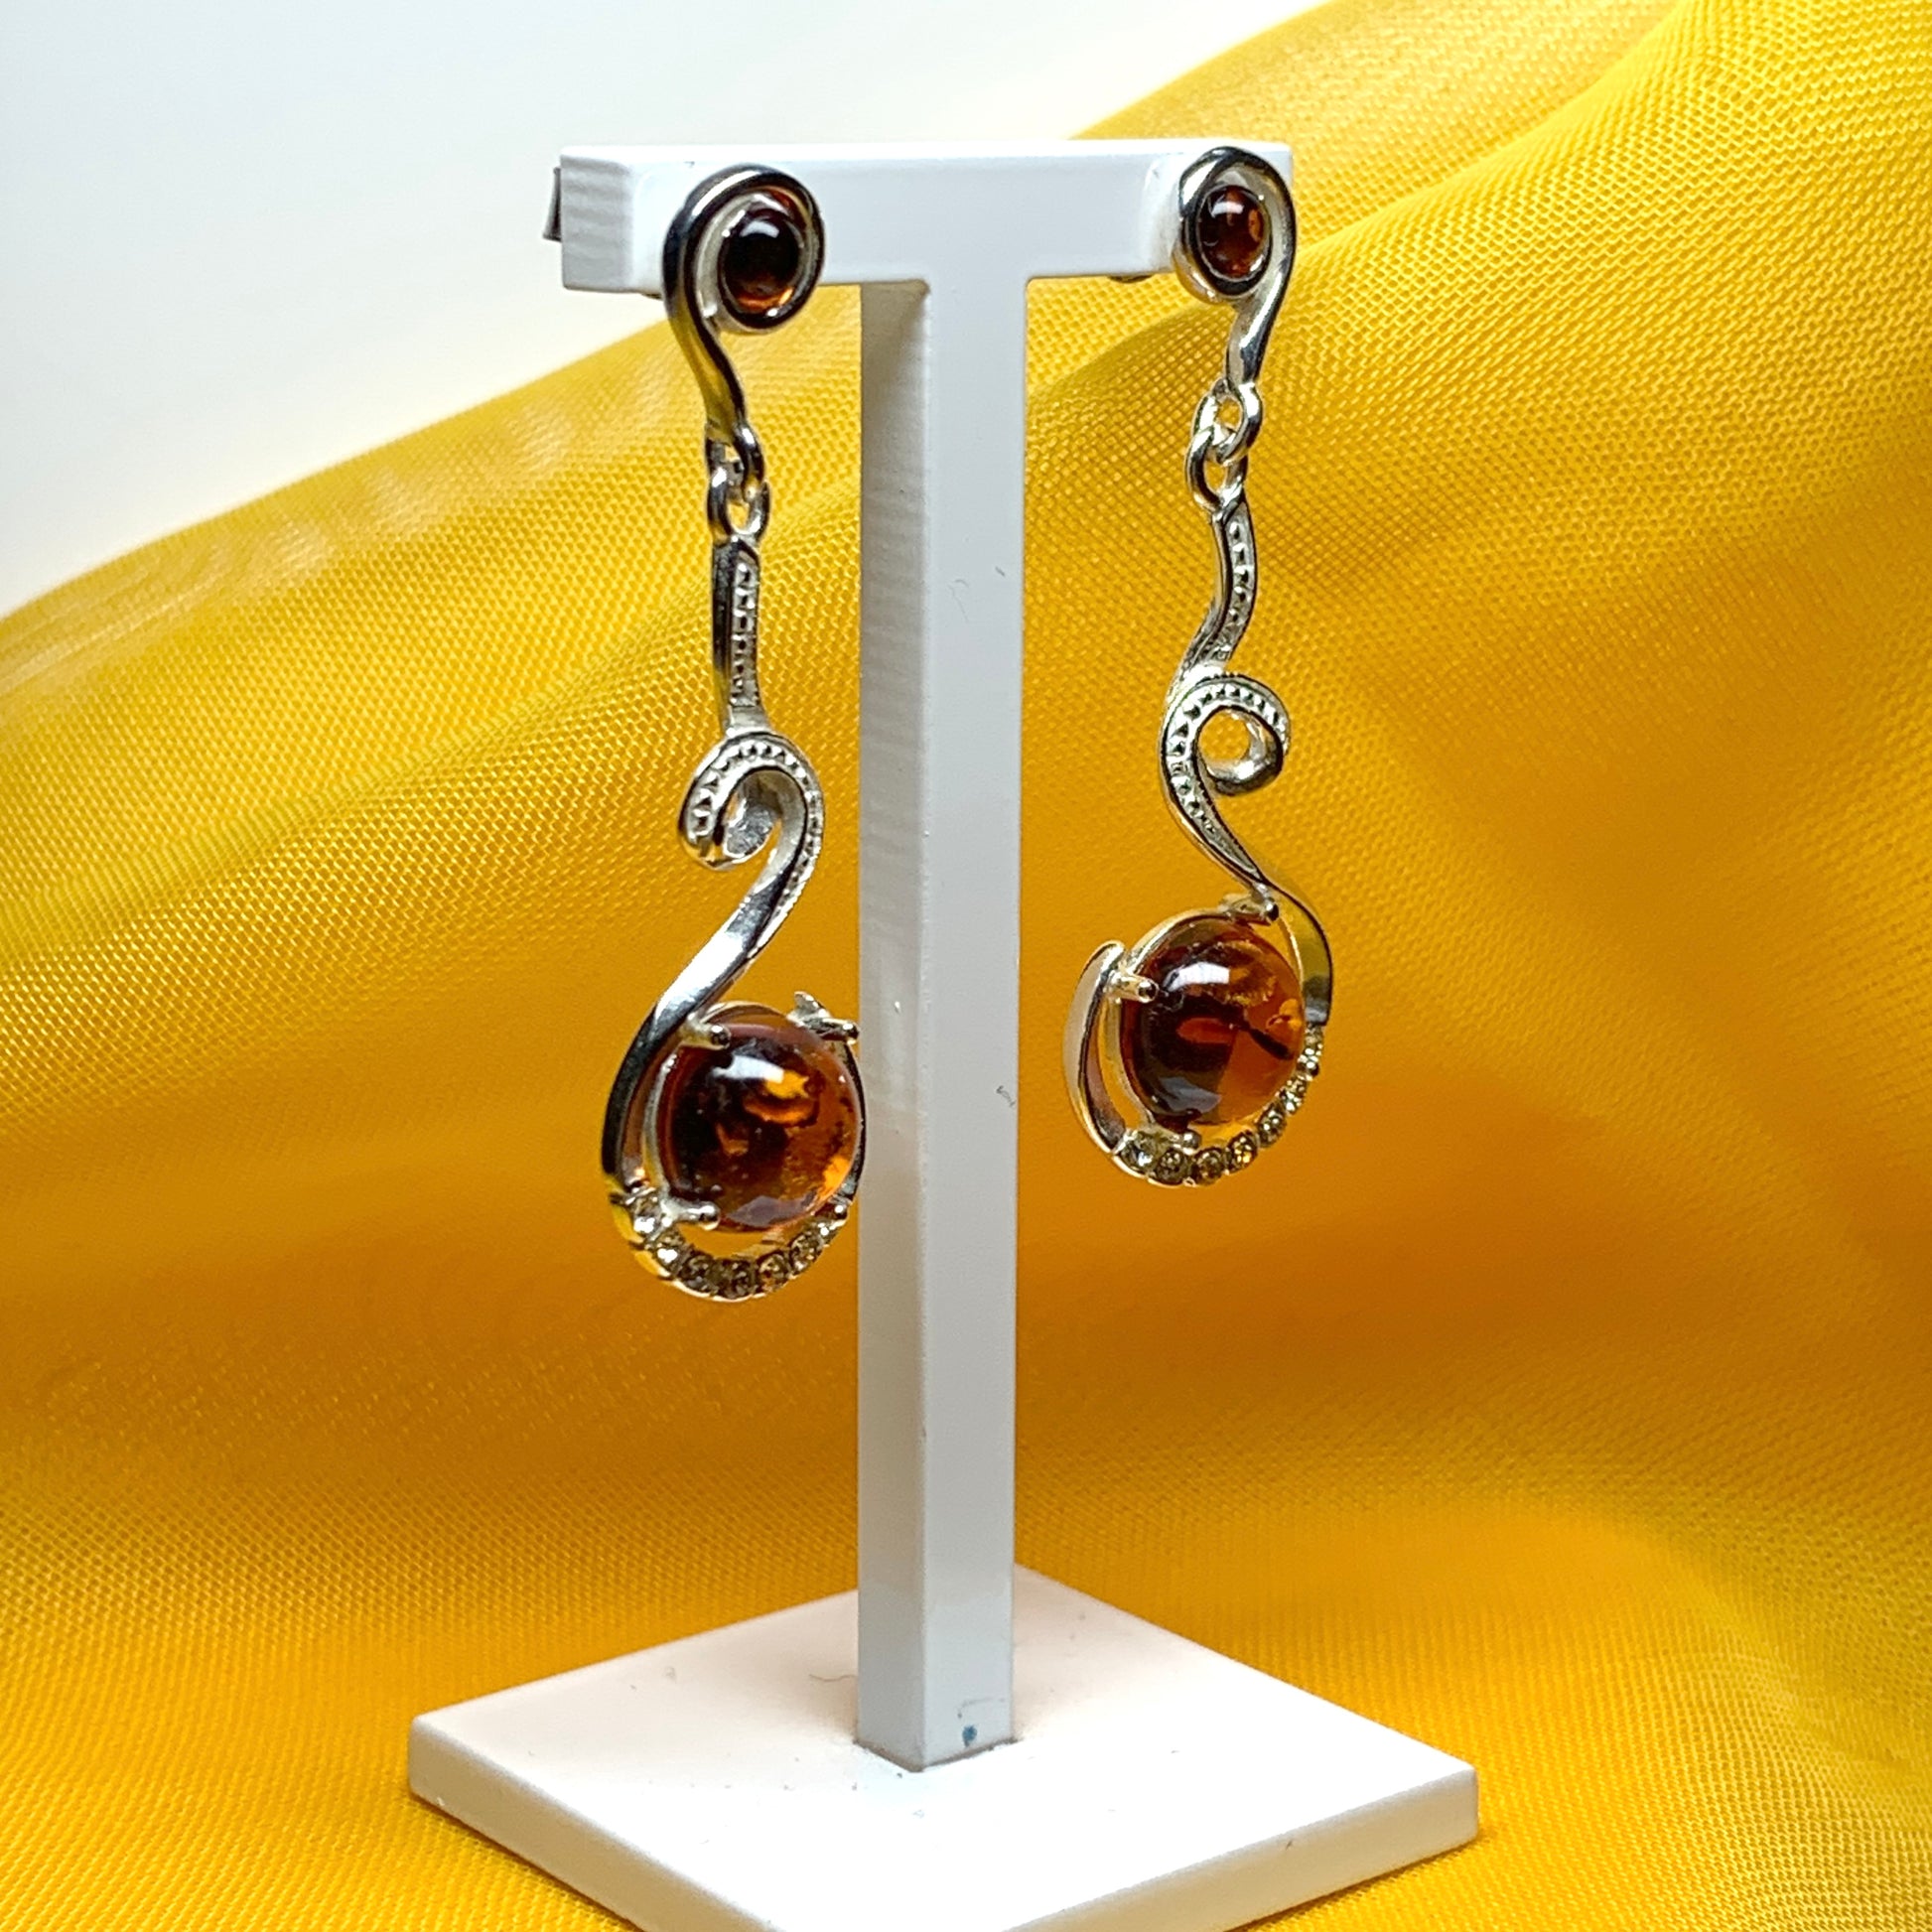 Real amber round drop earrings sterling silver fancy swirl